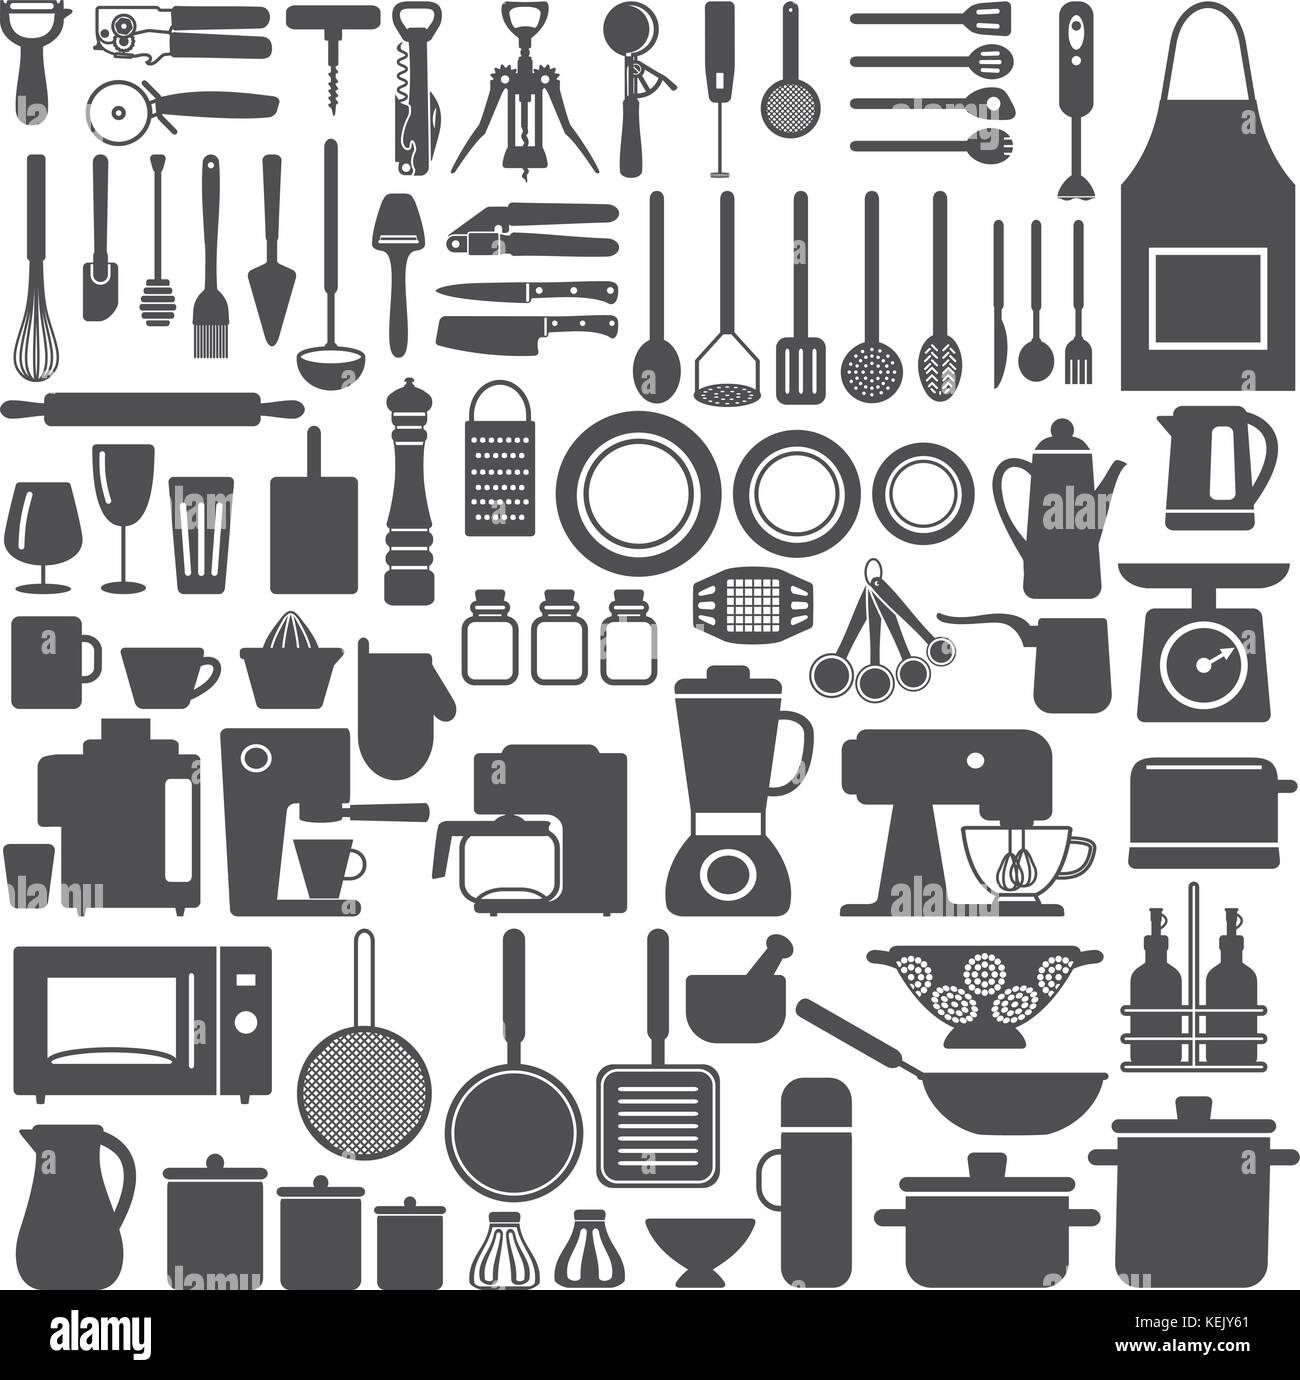 Verschiedenen Küchengeräten und Geräten Vektor silhouette Symbole gesetzt. Stock Vektor